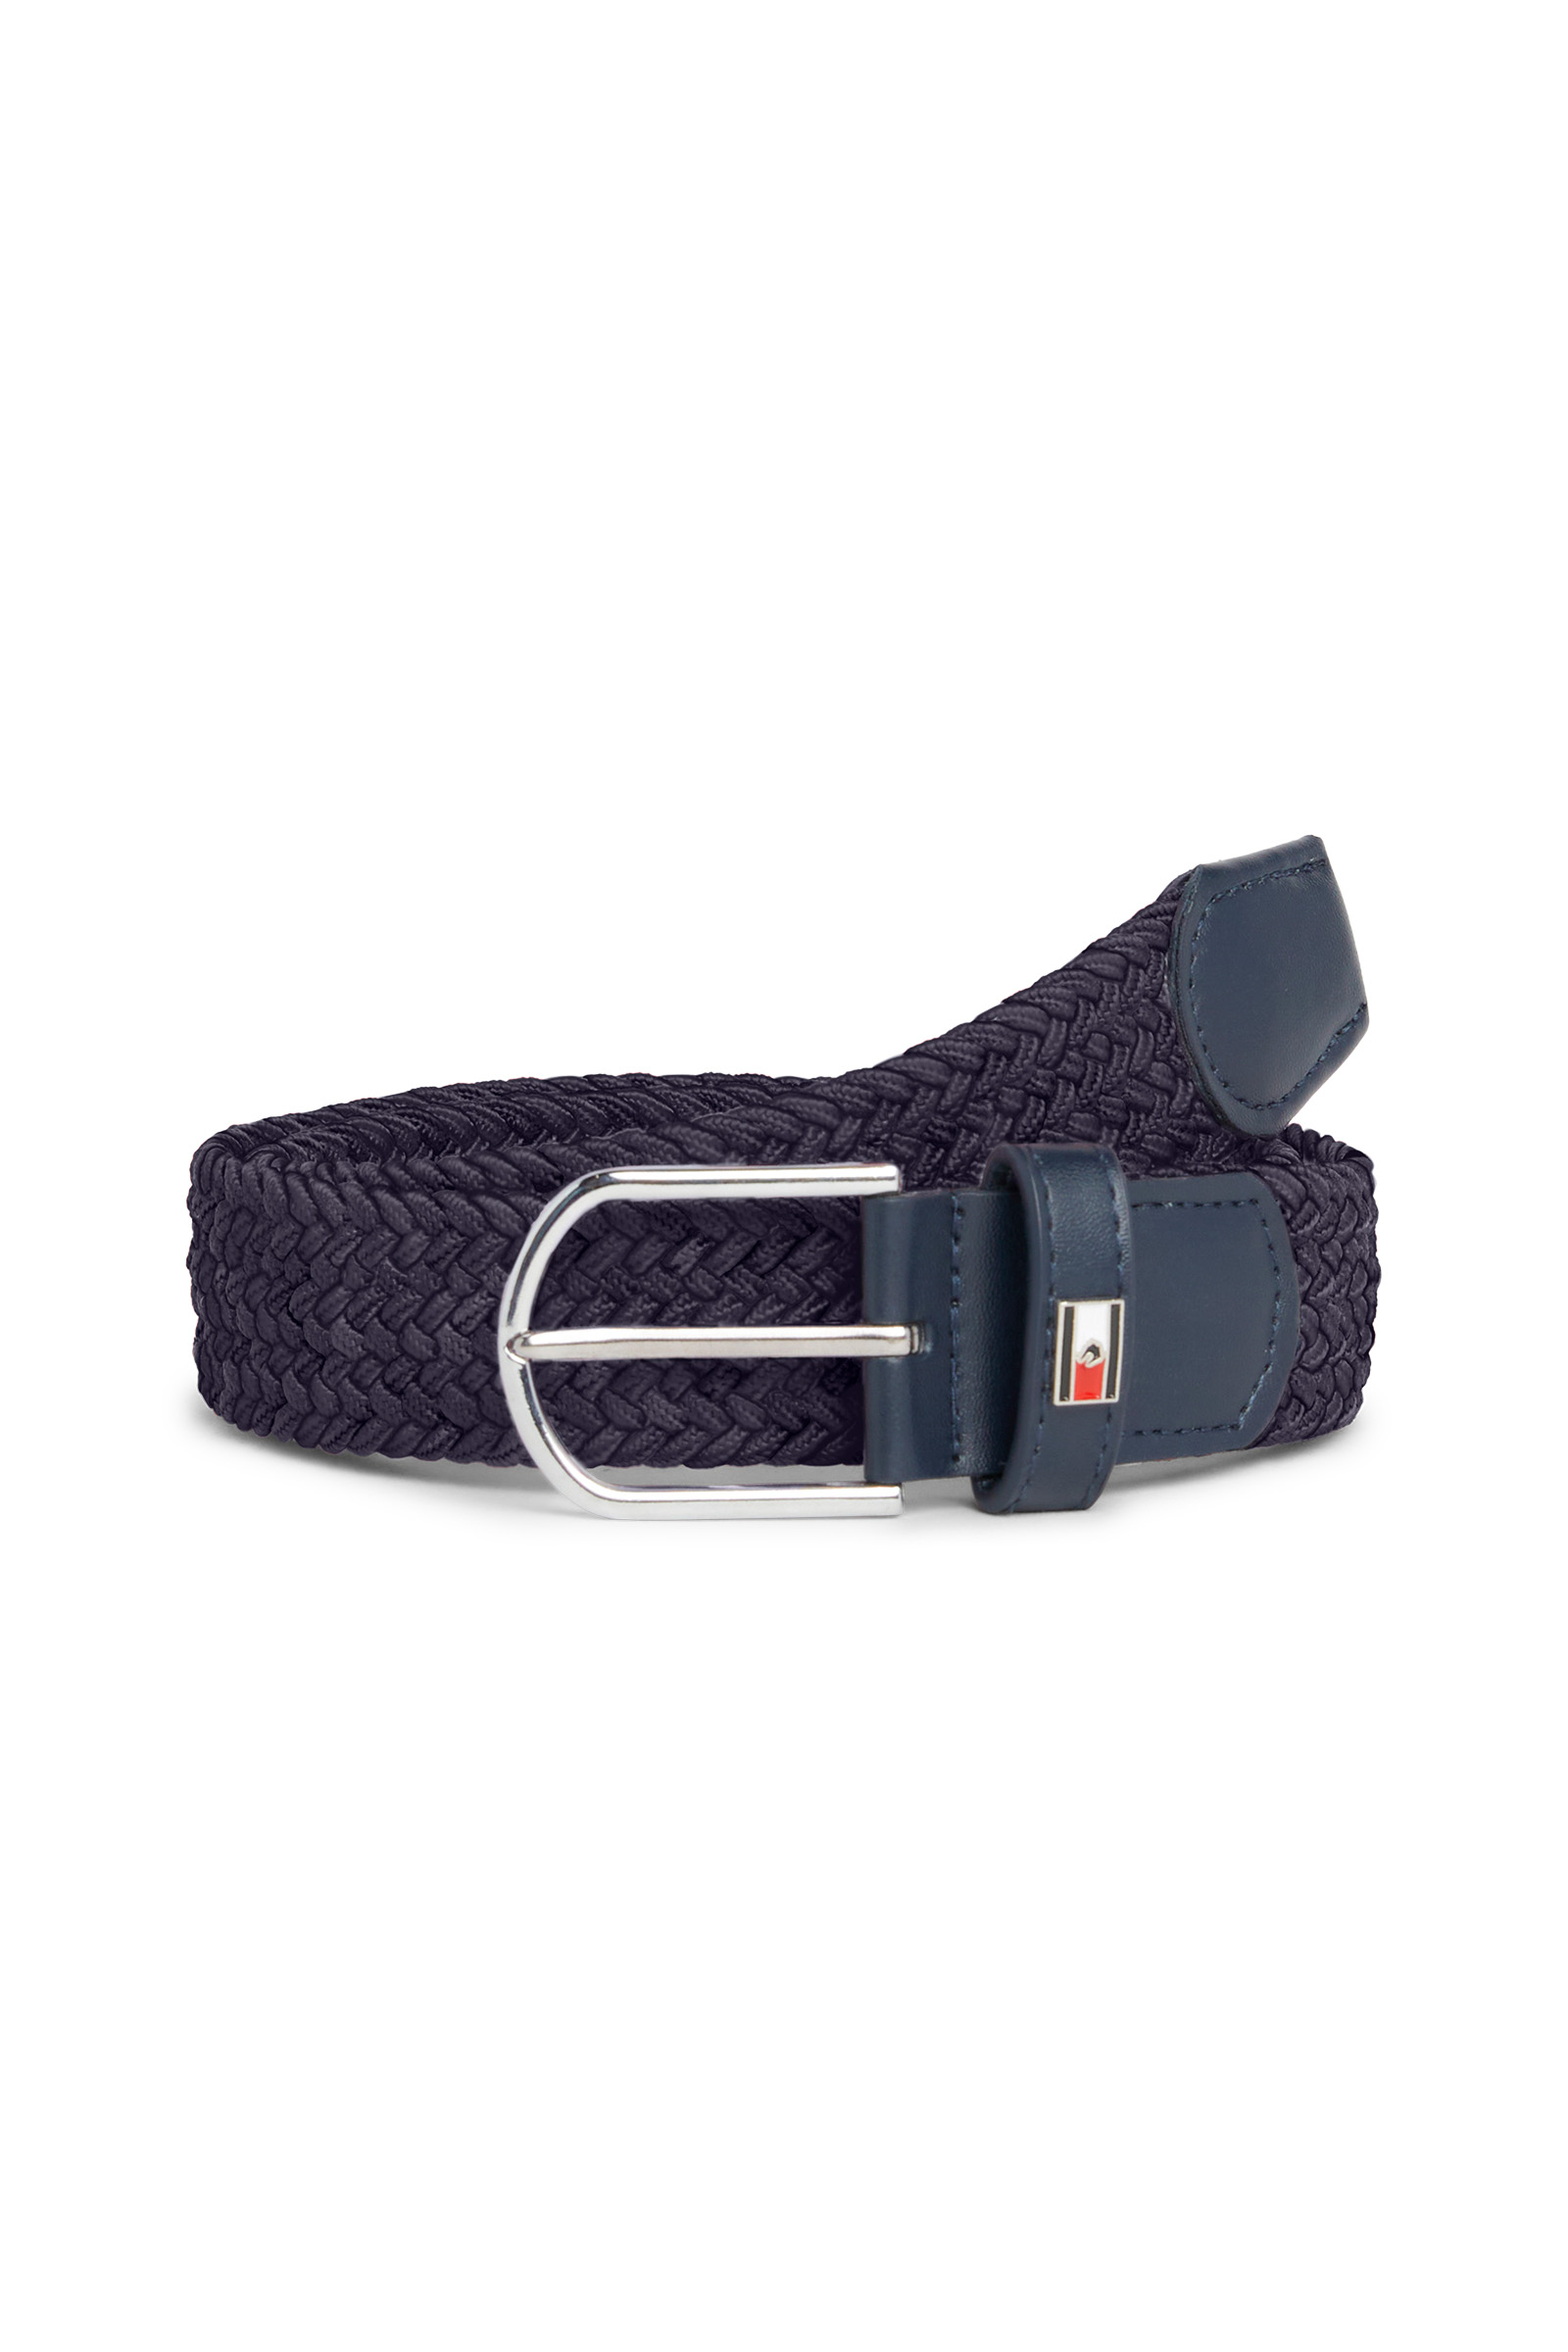 Buy Horze Kids Braided Stretch Belt